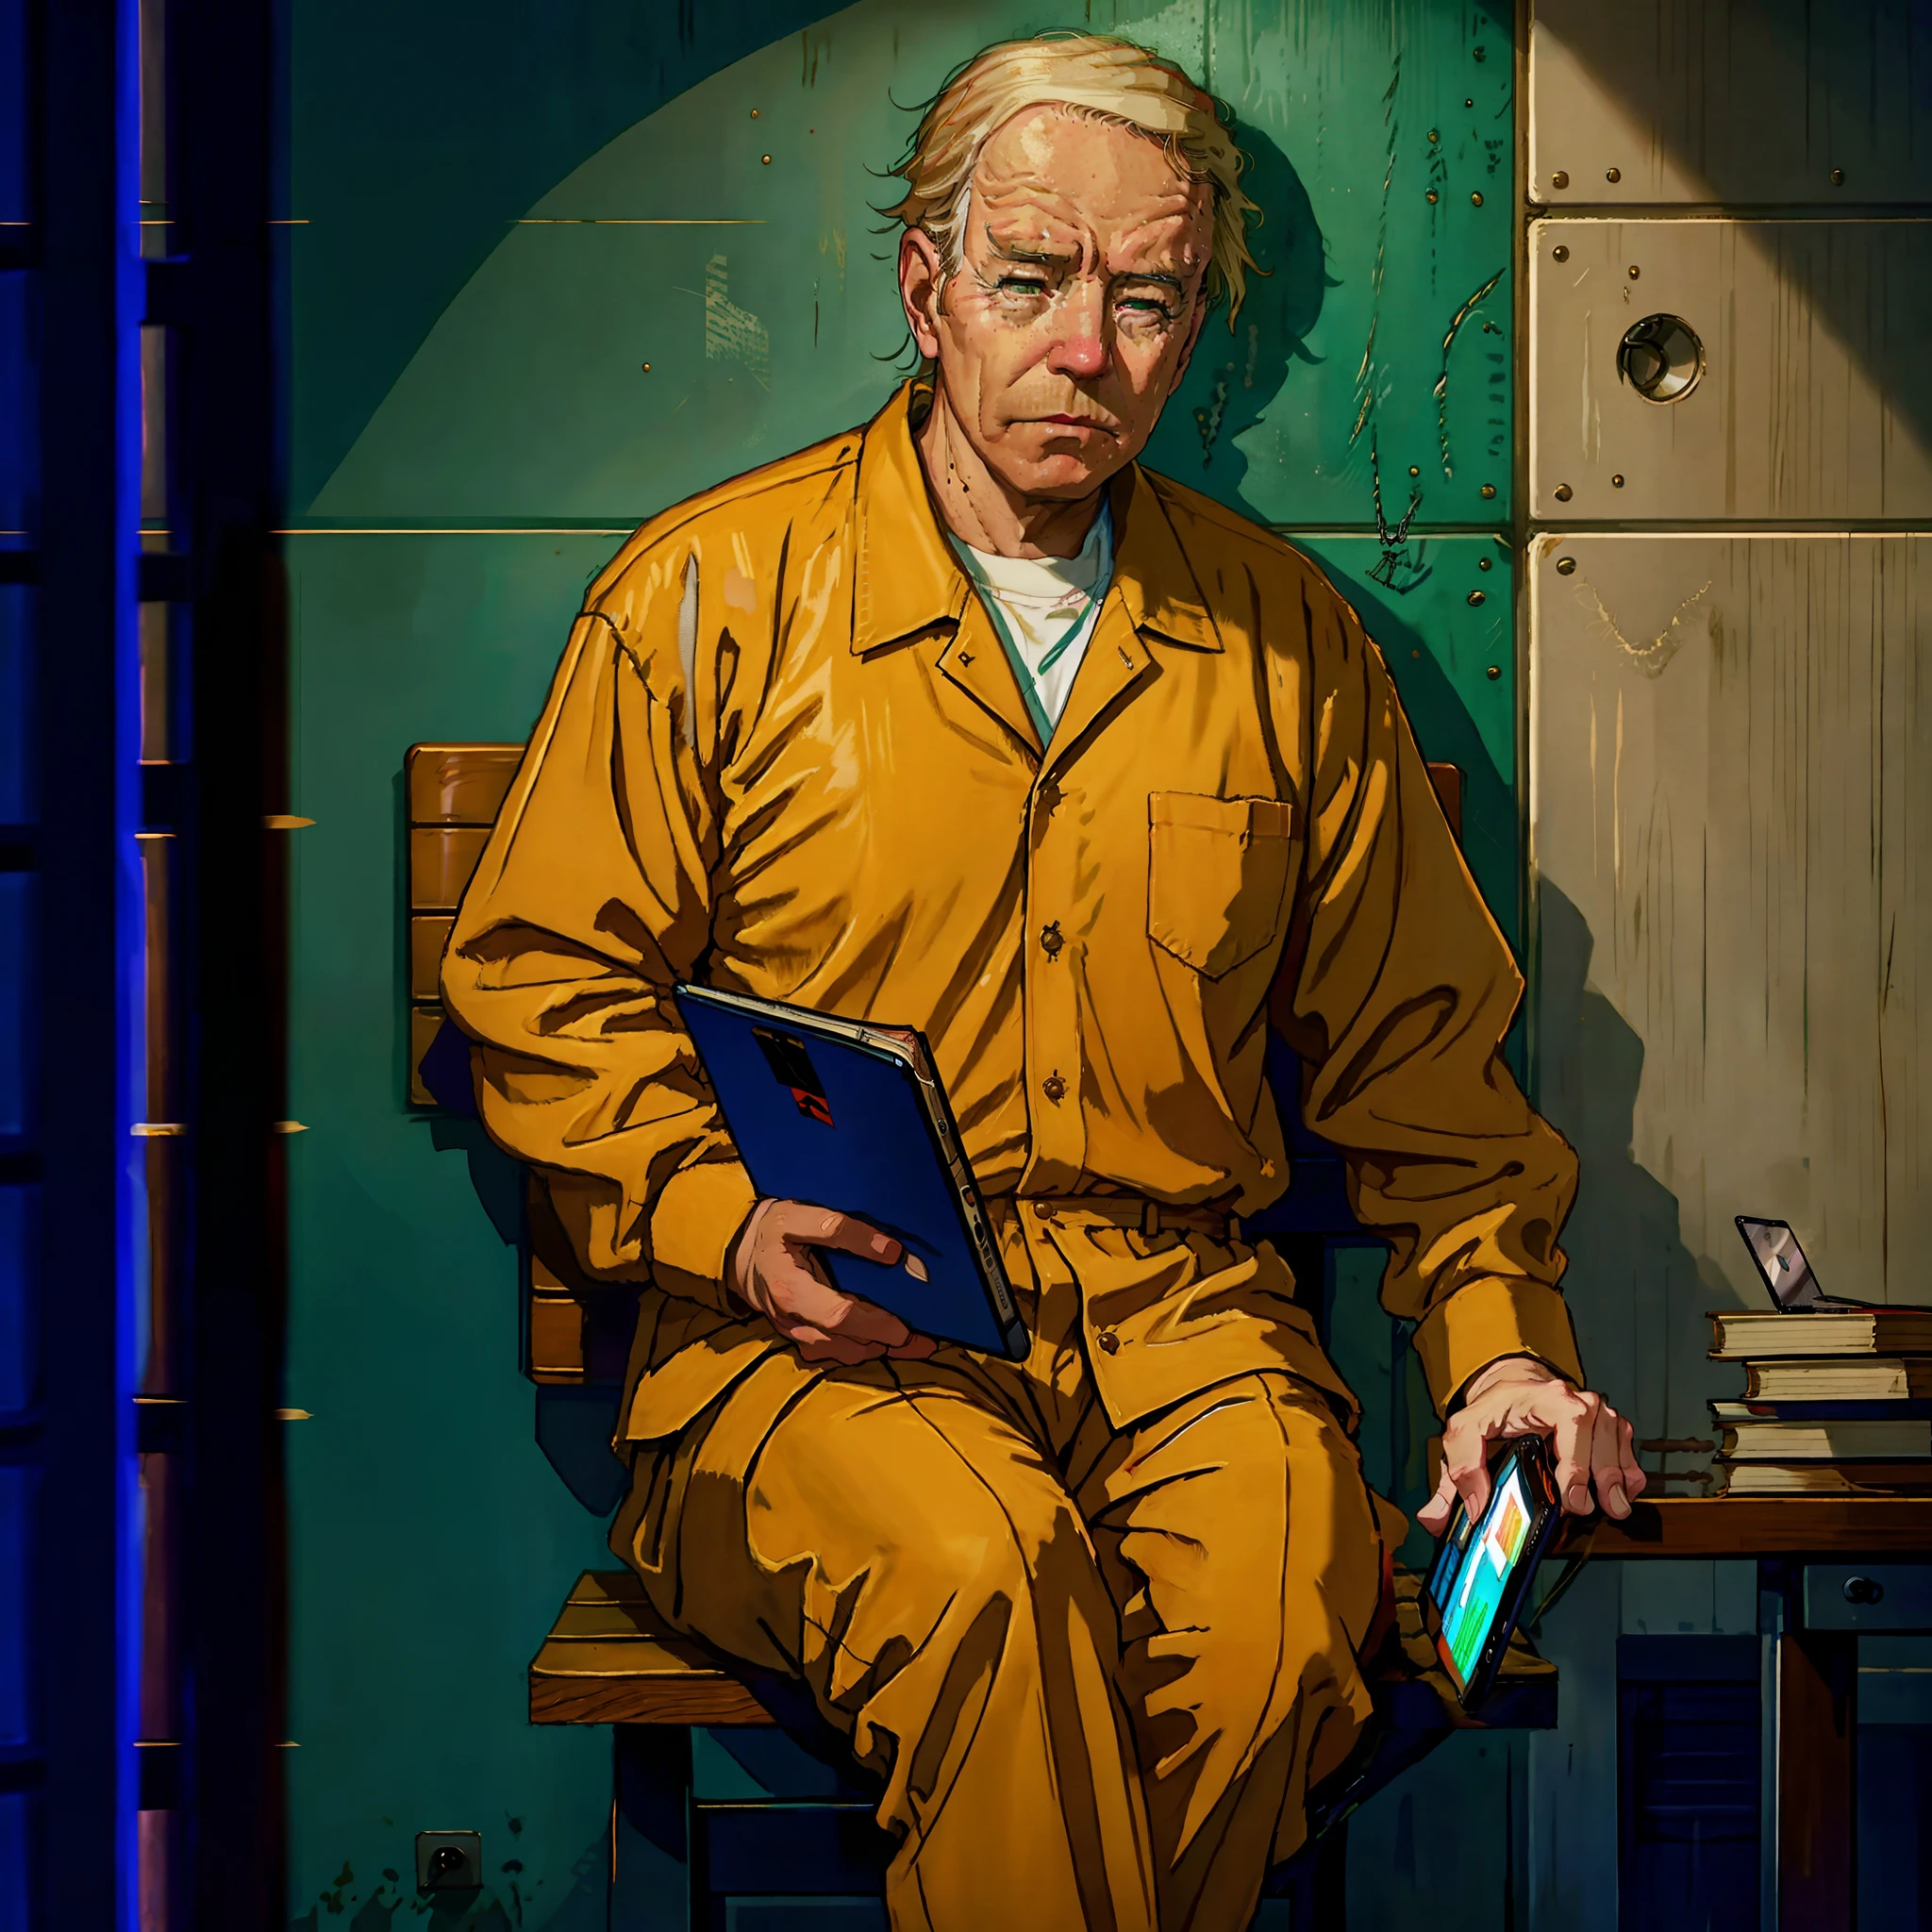 Арафед в оранжевой тюремной форме сидит на скамейке и читает книгу, сидя в тюрьме, сидя в темной тюремной камере, donald trump в тюрьме, Кадр из фильма Джо Байдена, в тюремной камере, в тюрьме, в тюрьме, заключенный, Откровенный портрет Джо Байдена, sad заключенный holding ipad, в маленькой тюремной камере, donald trump в тюрьме